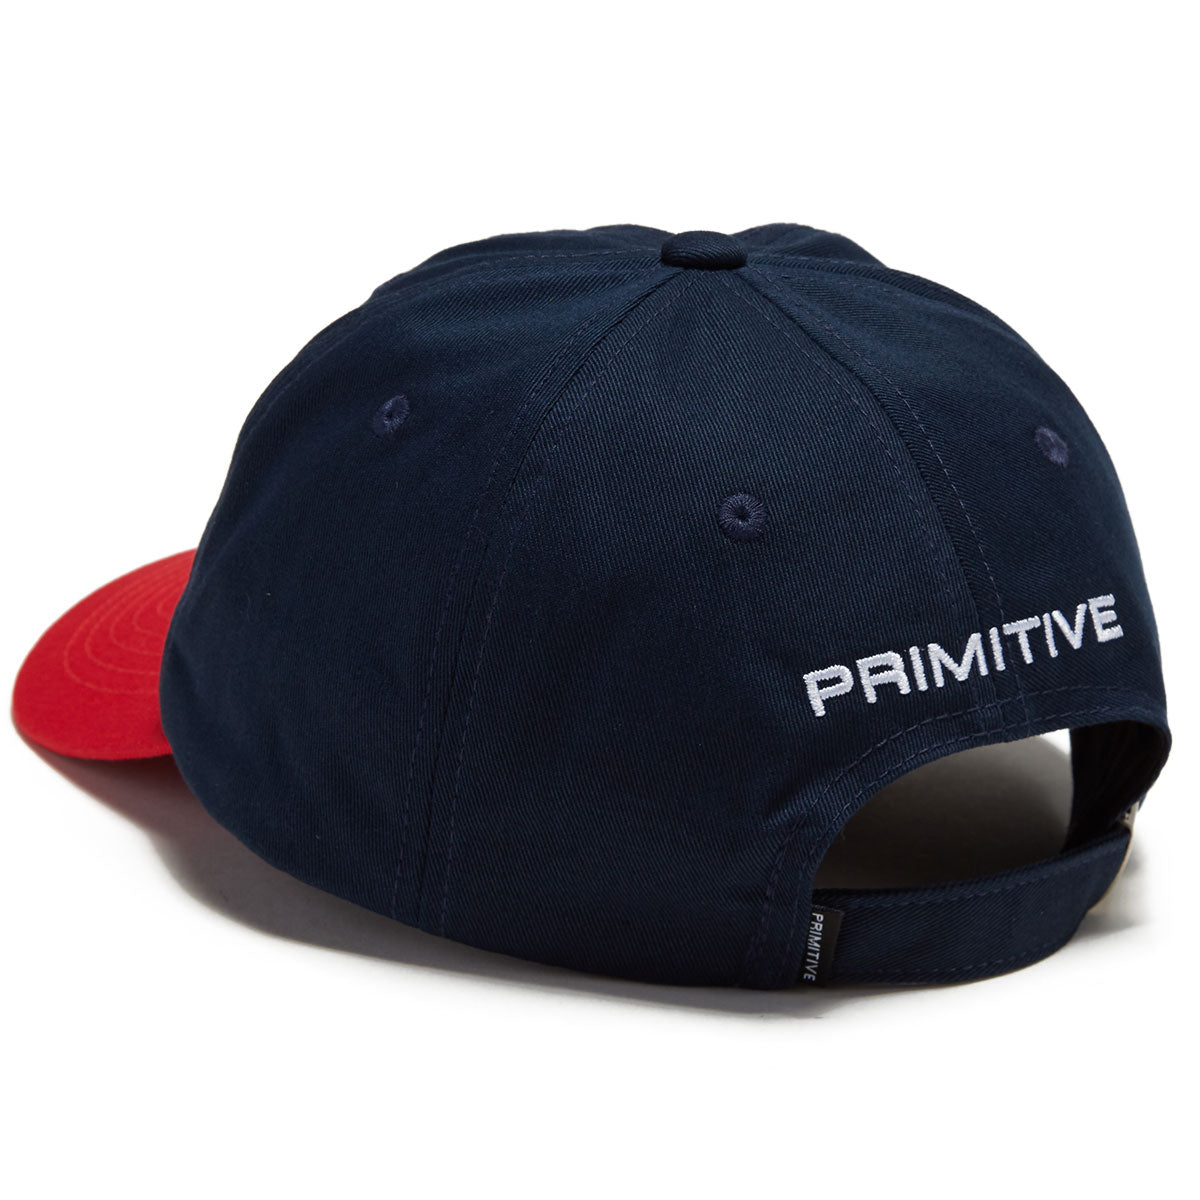 Primitive Crest Strapback Hat - Navy image 2